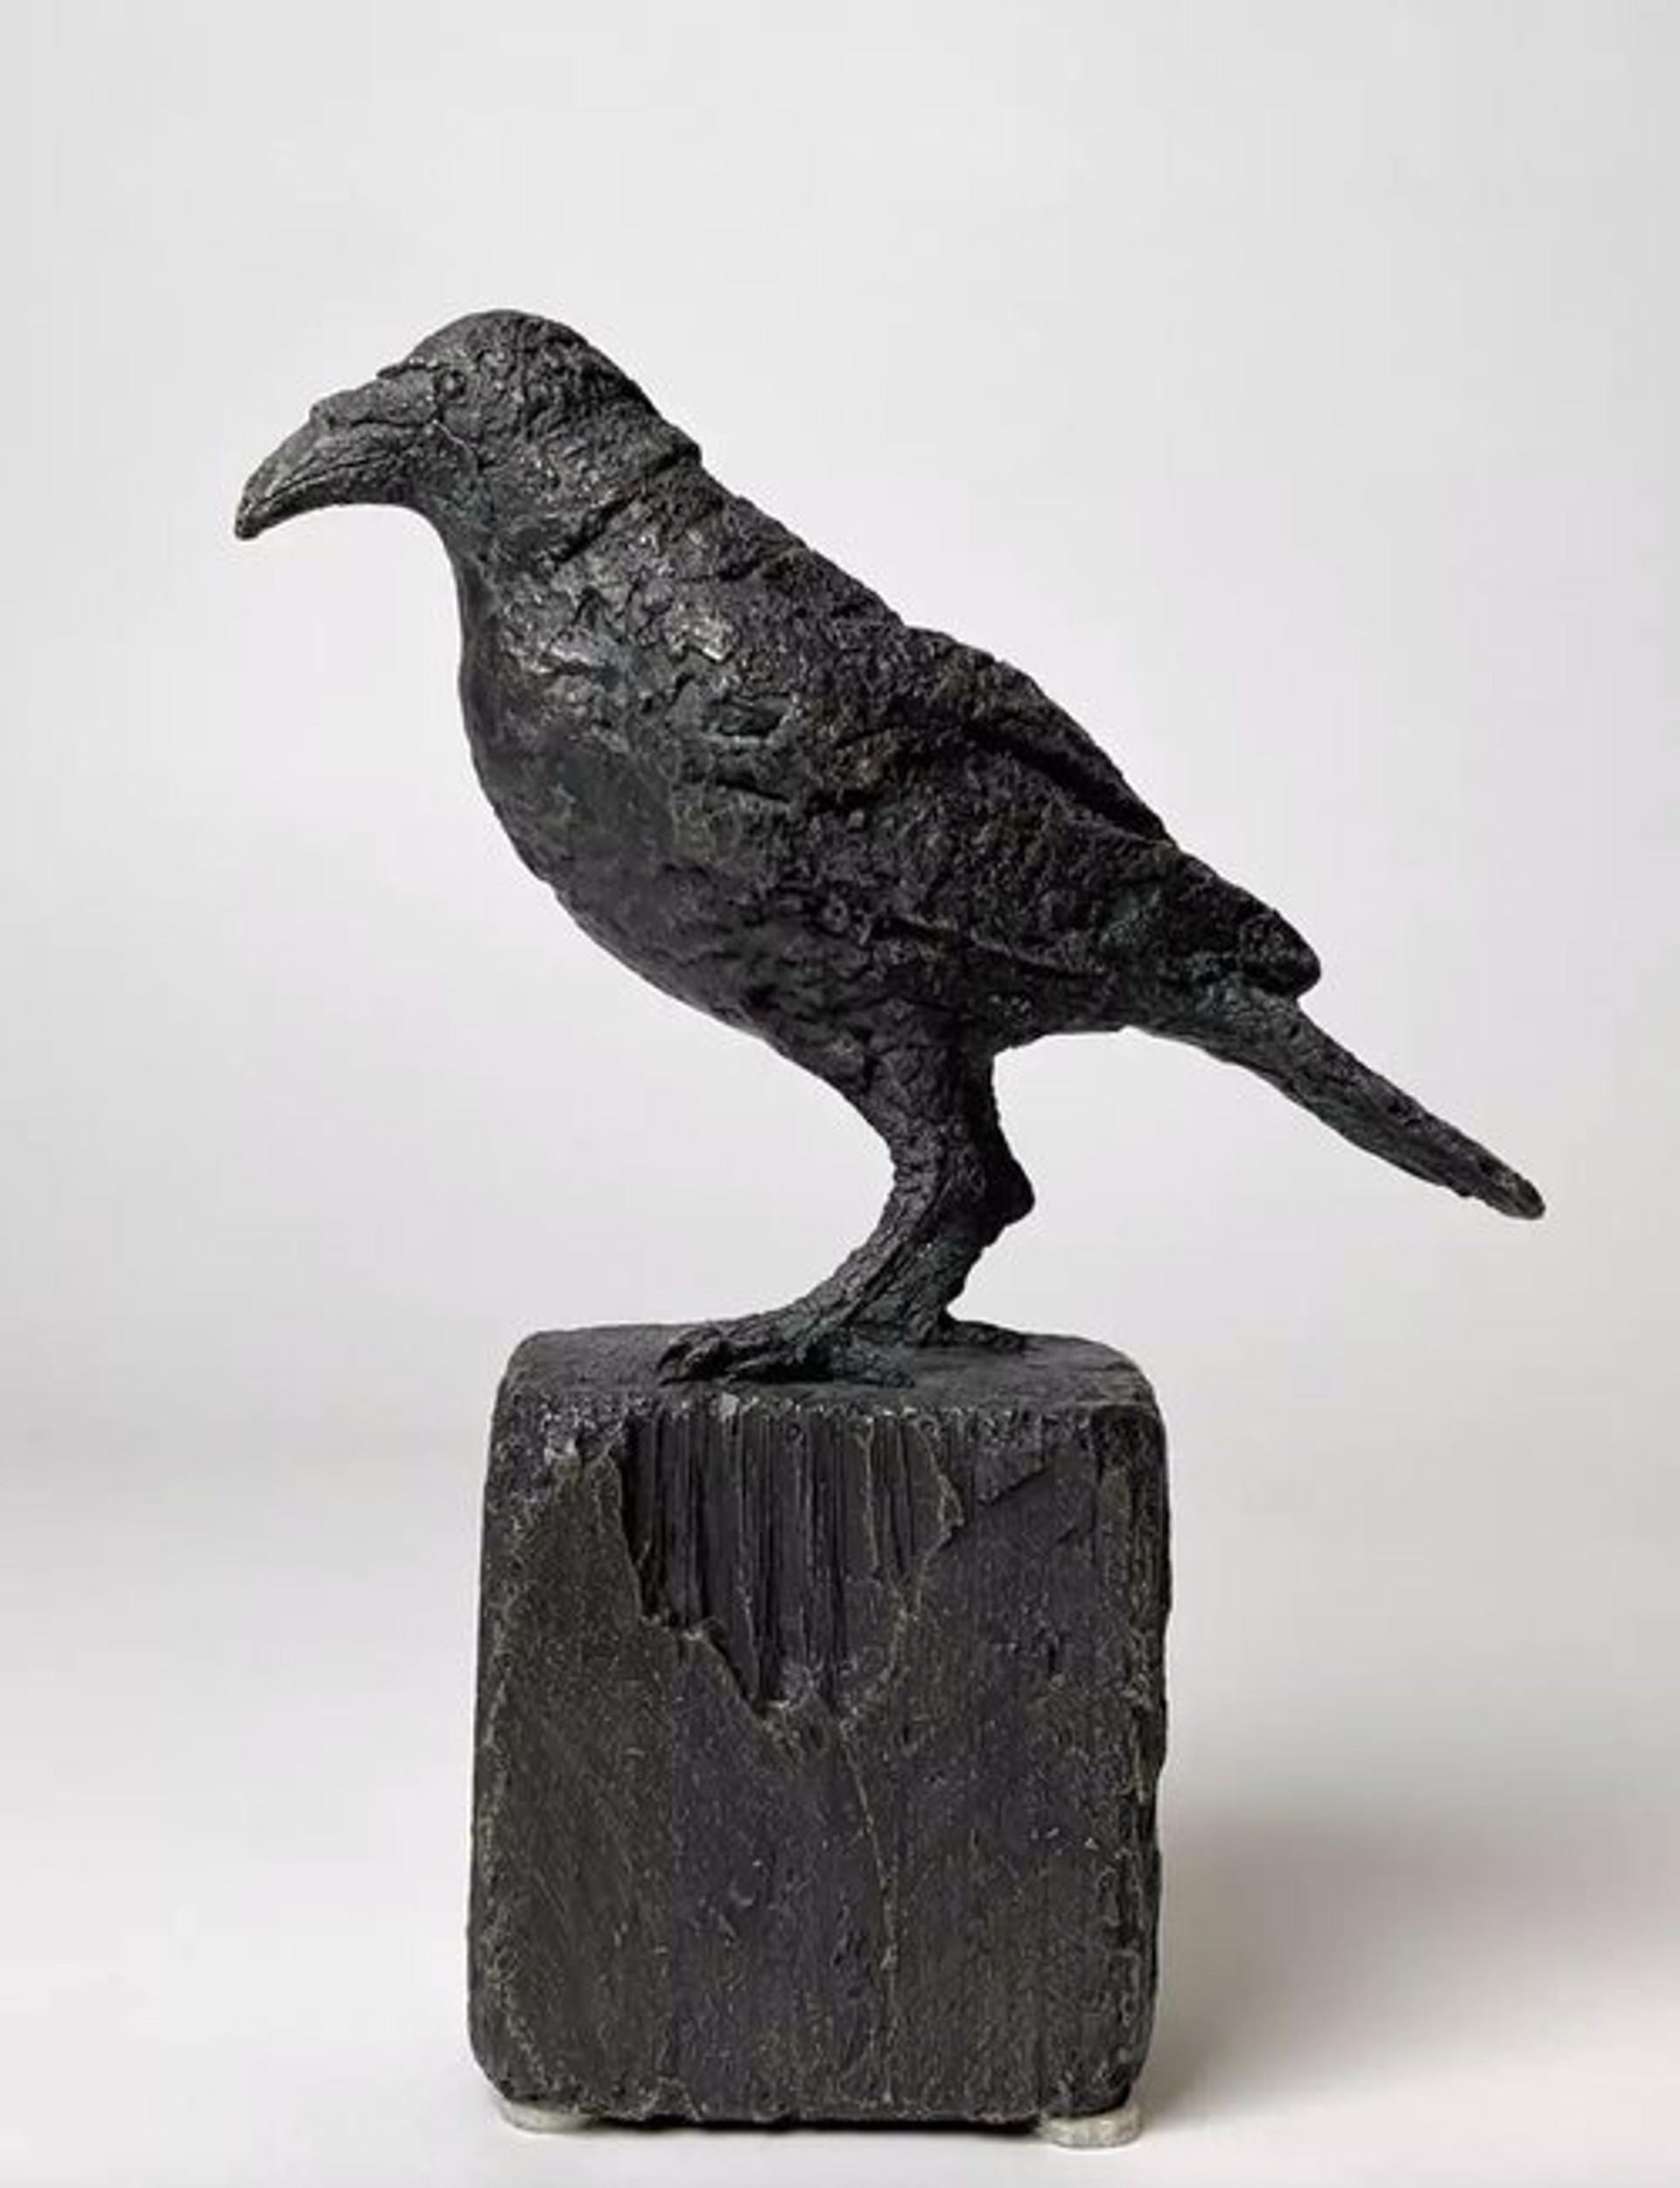 Raven by Gustavo Torres